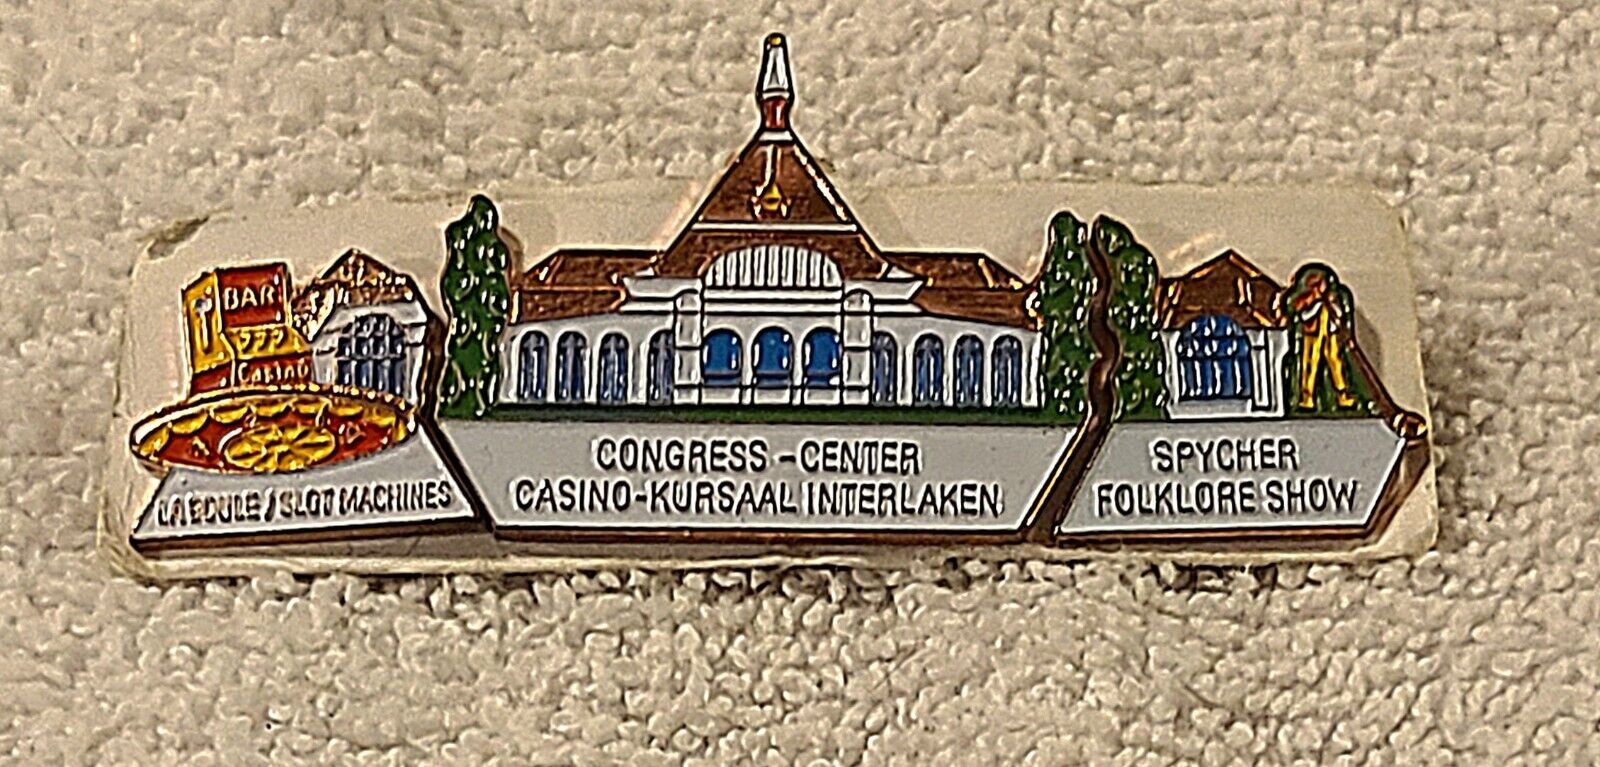 Casino Kursaal Interlaken Switzerland 3 Pin Collector set Congress Center New D1